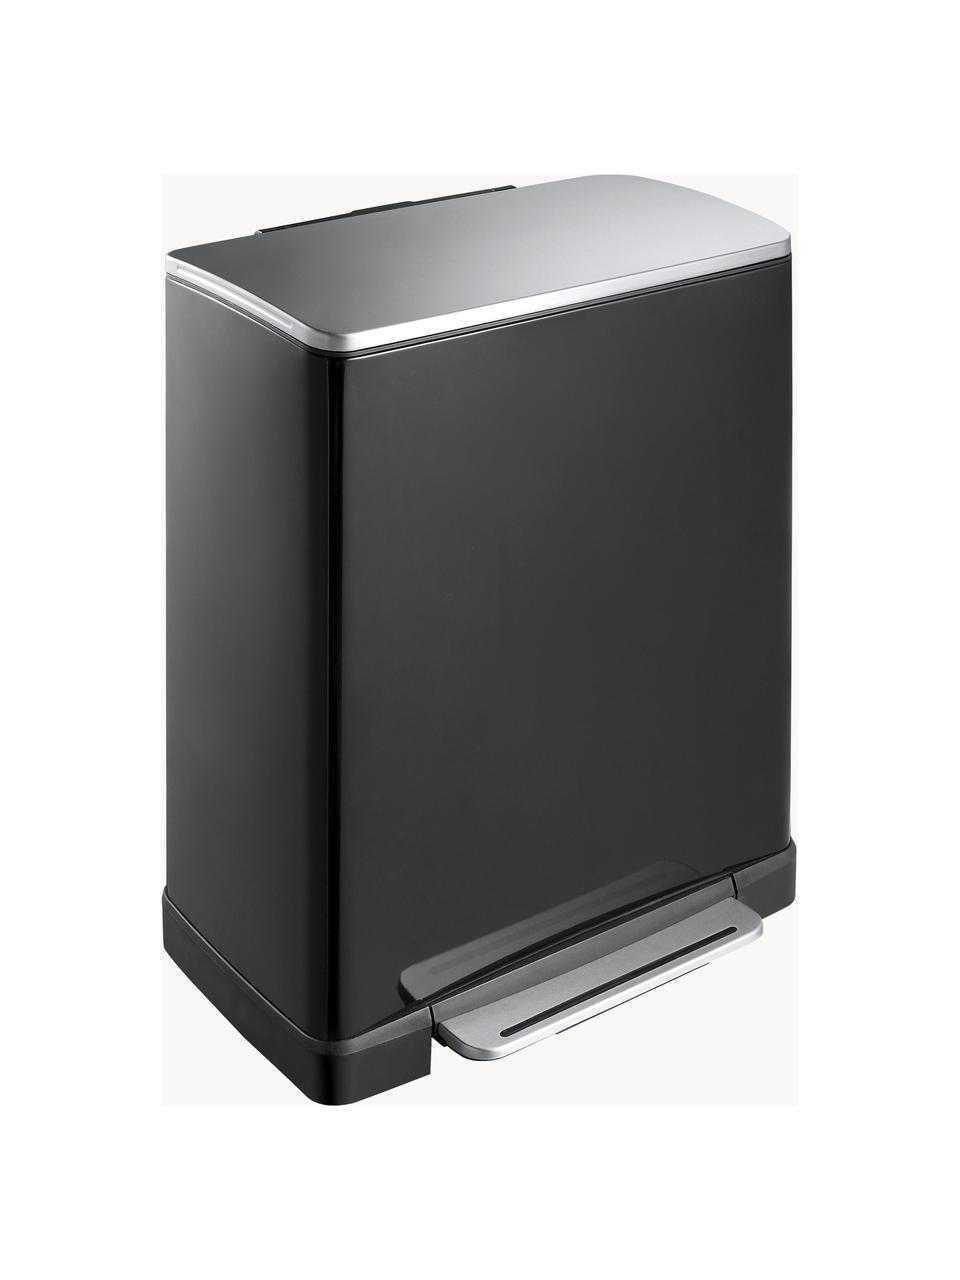 Odpadkový koš Recycle E-Cube, 28 l + 18 l, Matná černá, Š 50 cm, H 35 cm, 28 l + 18 l